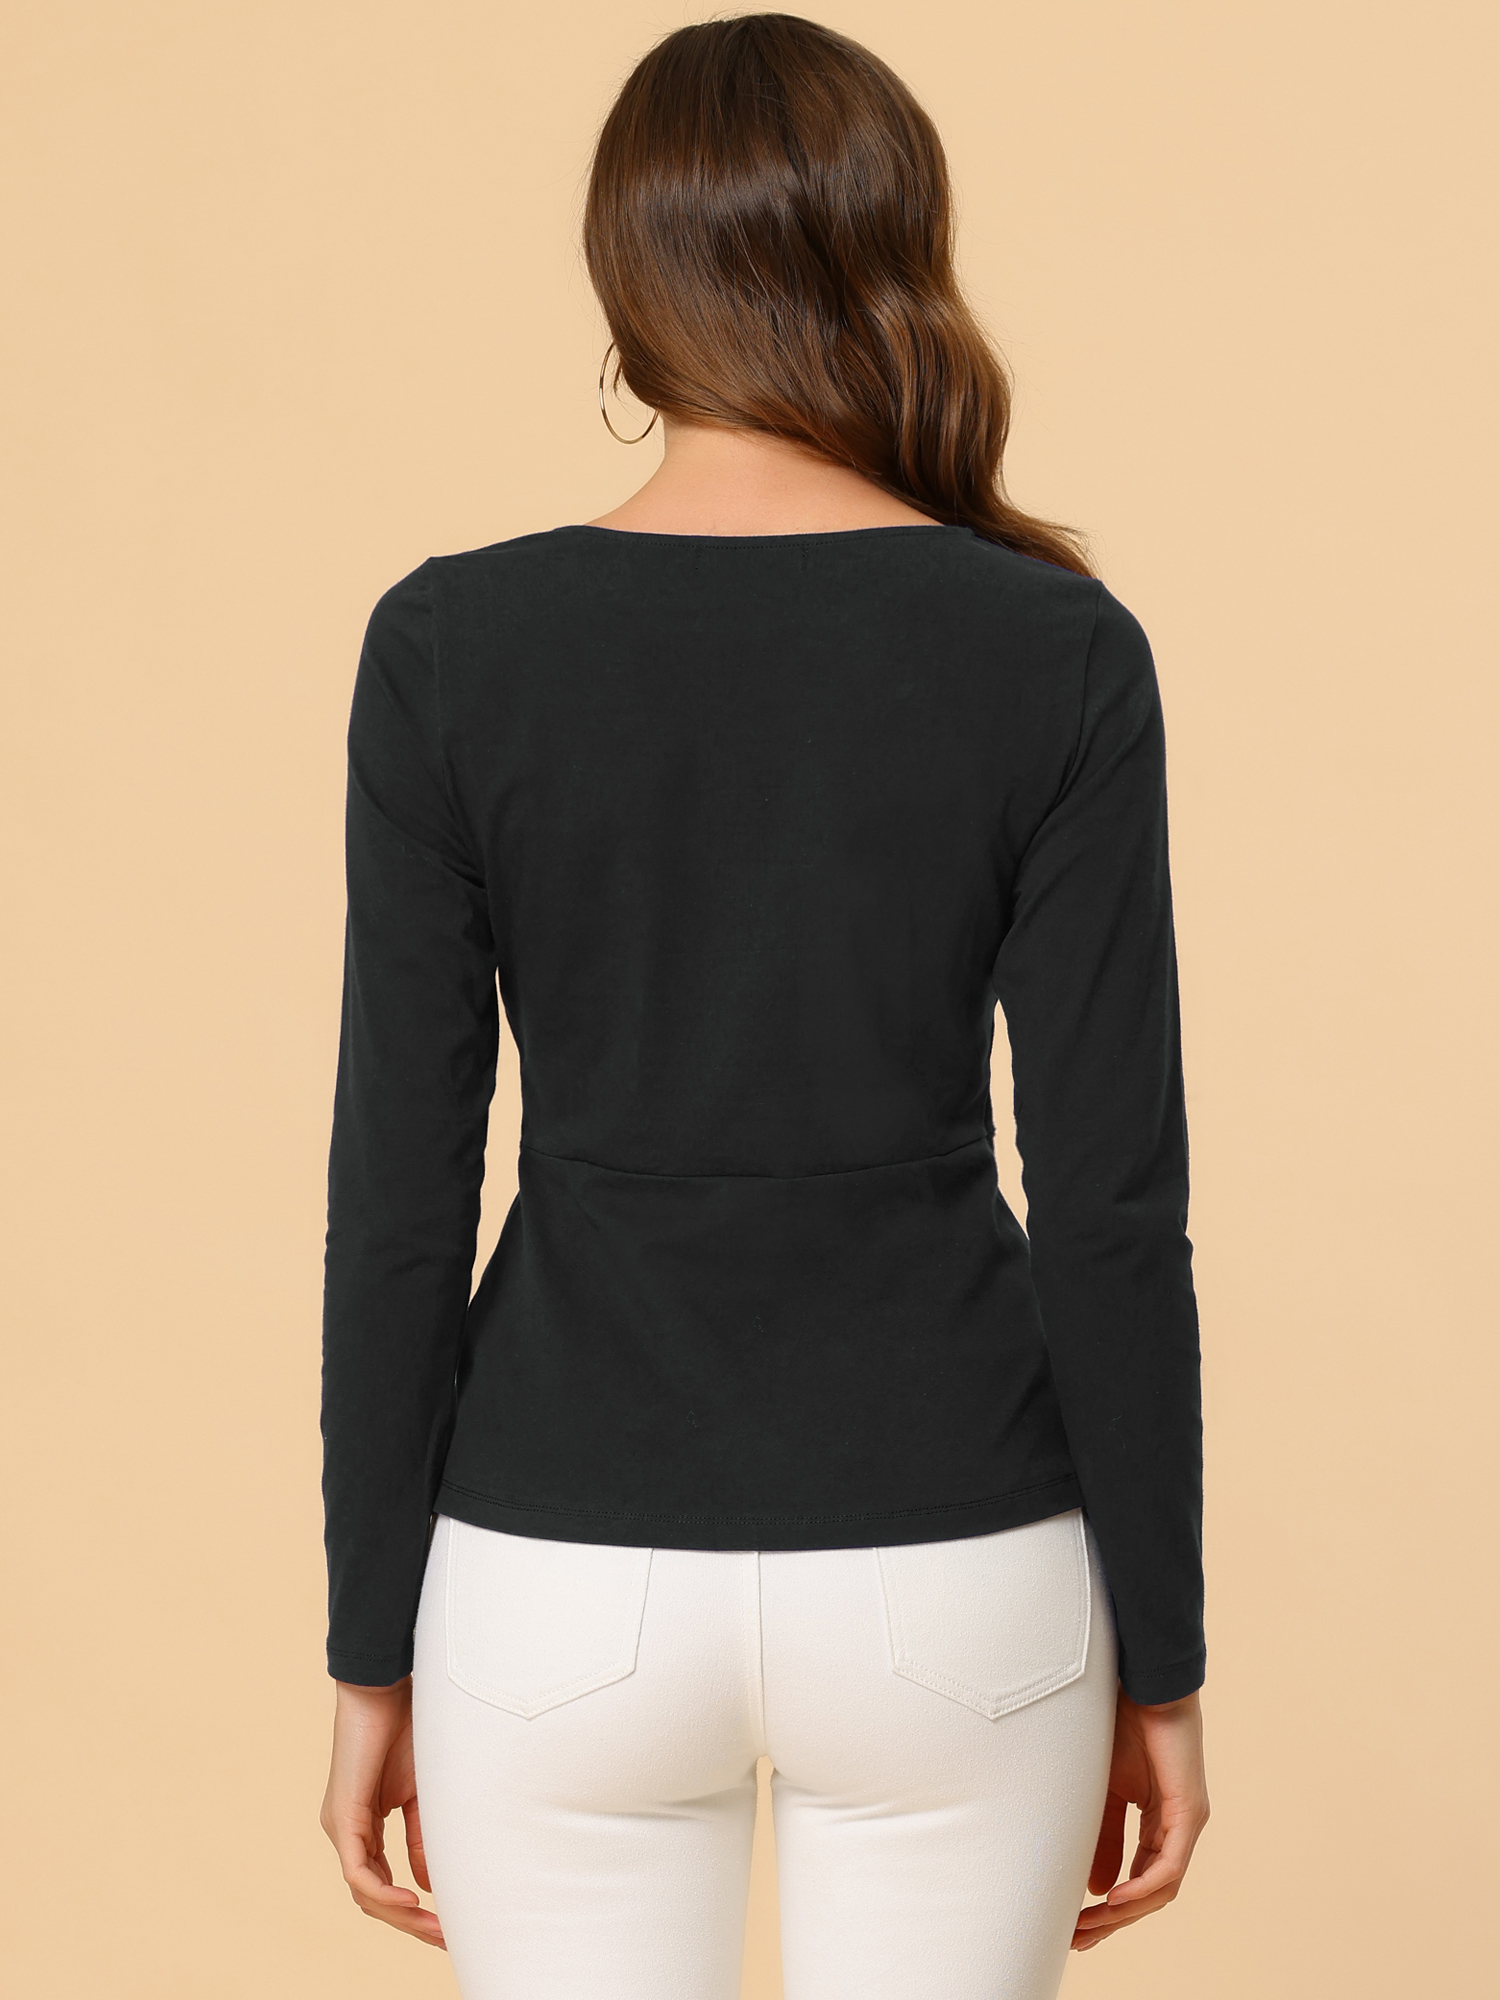 Unique Bargains Allegra K Women's Round Neck Front Twist Tops Long Sleeve Blouse Shirt